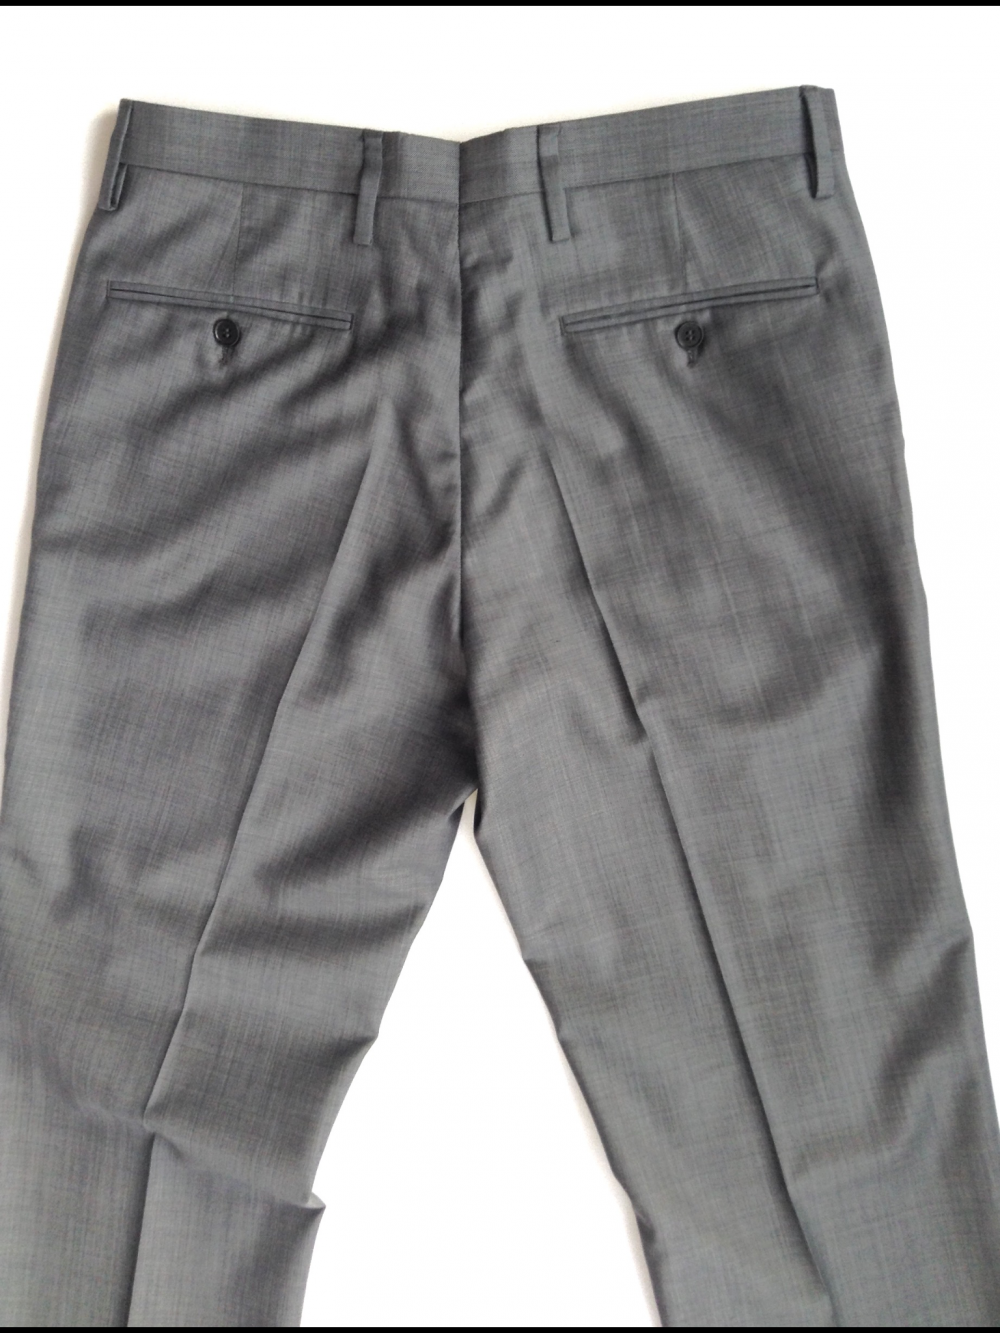 Классические мужские брюки, серые, на 46 (32/32) р., River Island, б/у 1раз